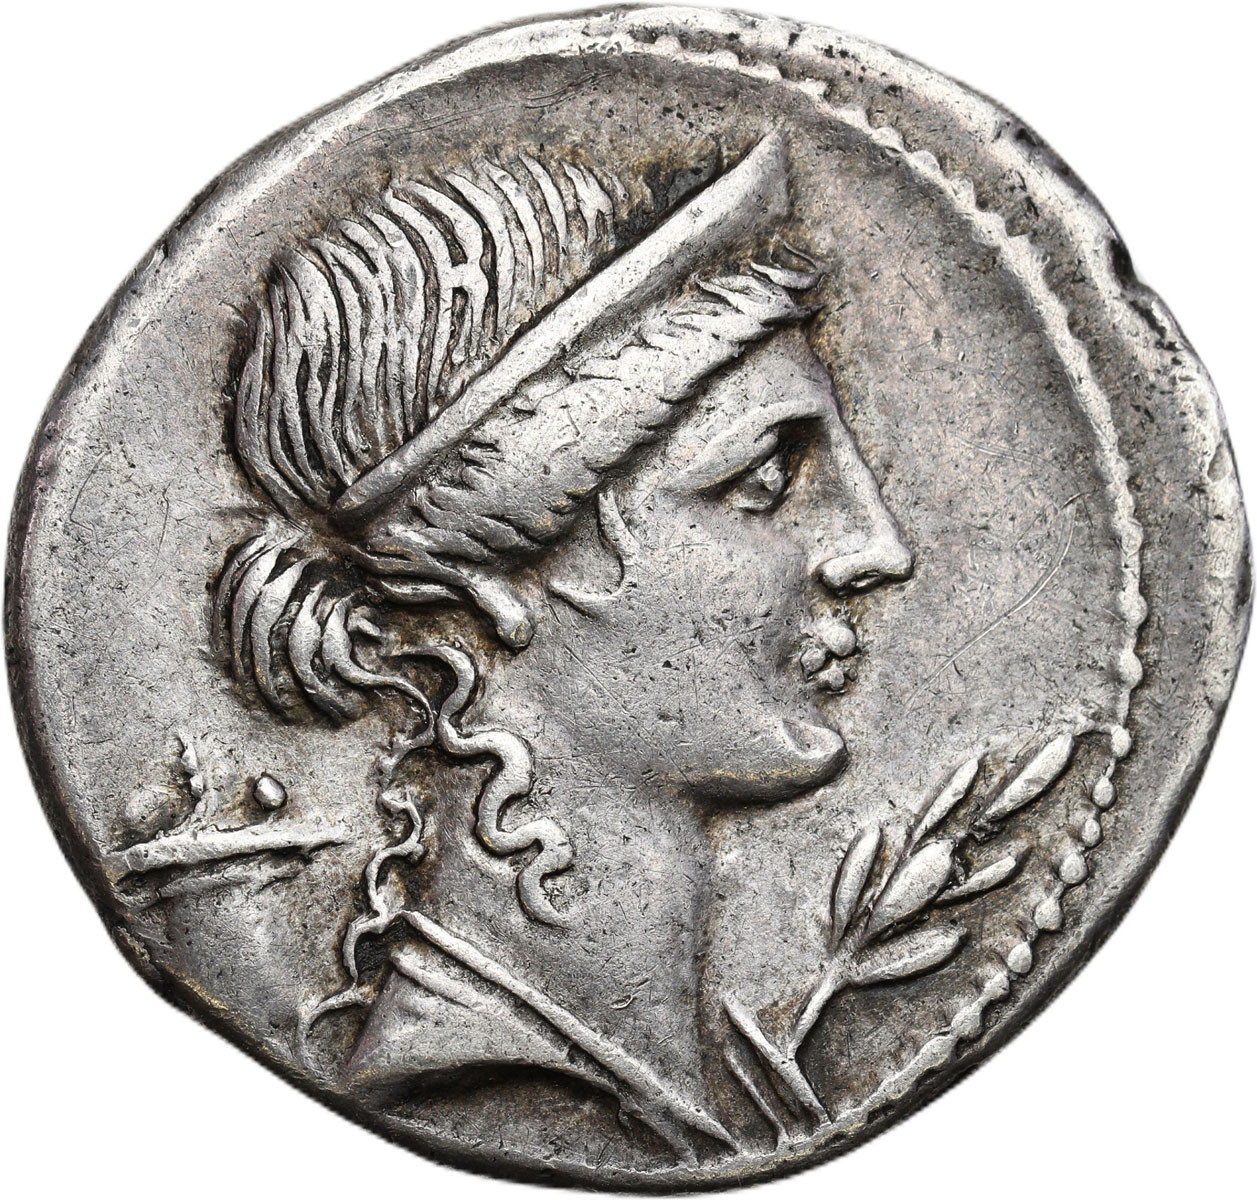 Cesarstwo Rzymskie. Denar, Oktawian August 27 p .n. e. - 14 n.e., Brundisium lub Rzym – RZADKI